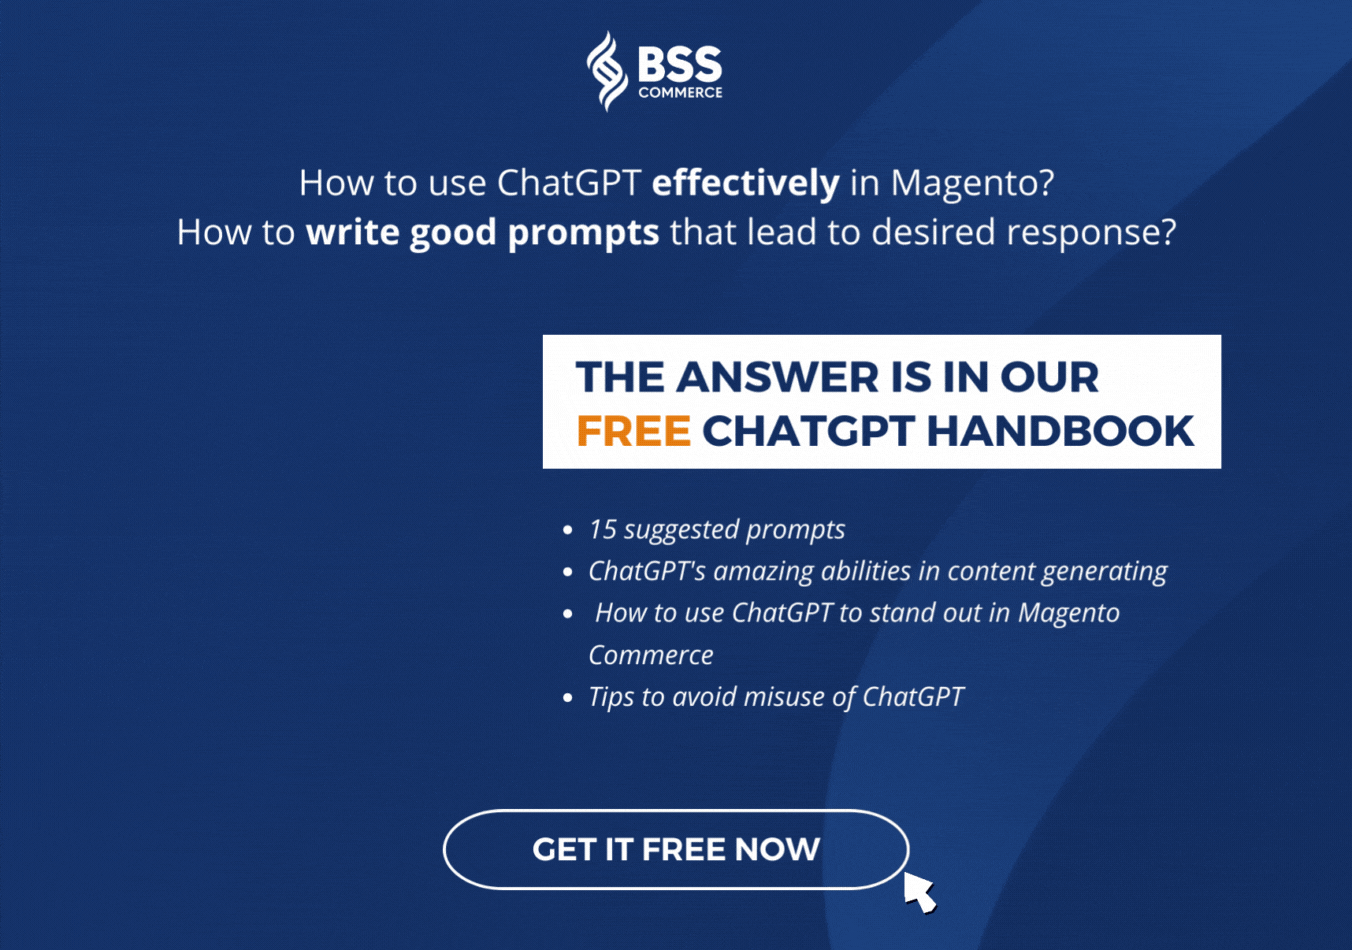 BSS-ChatGPT-Handbook